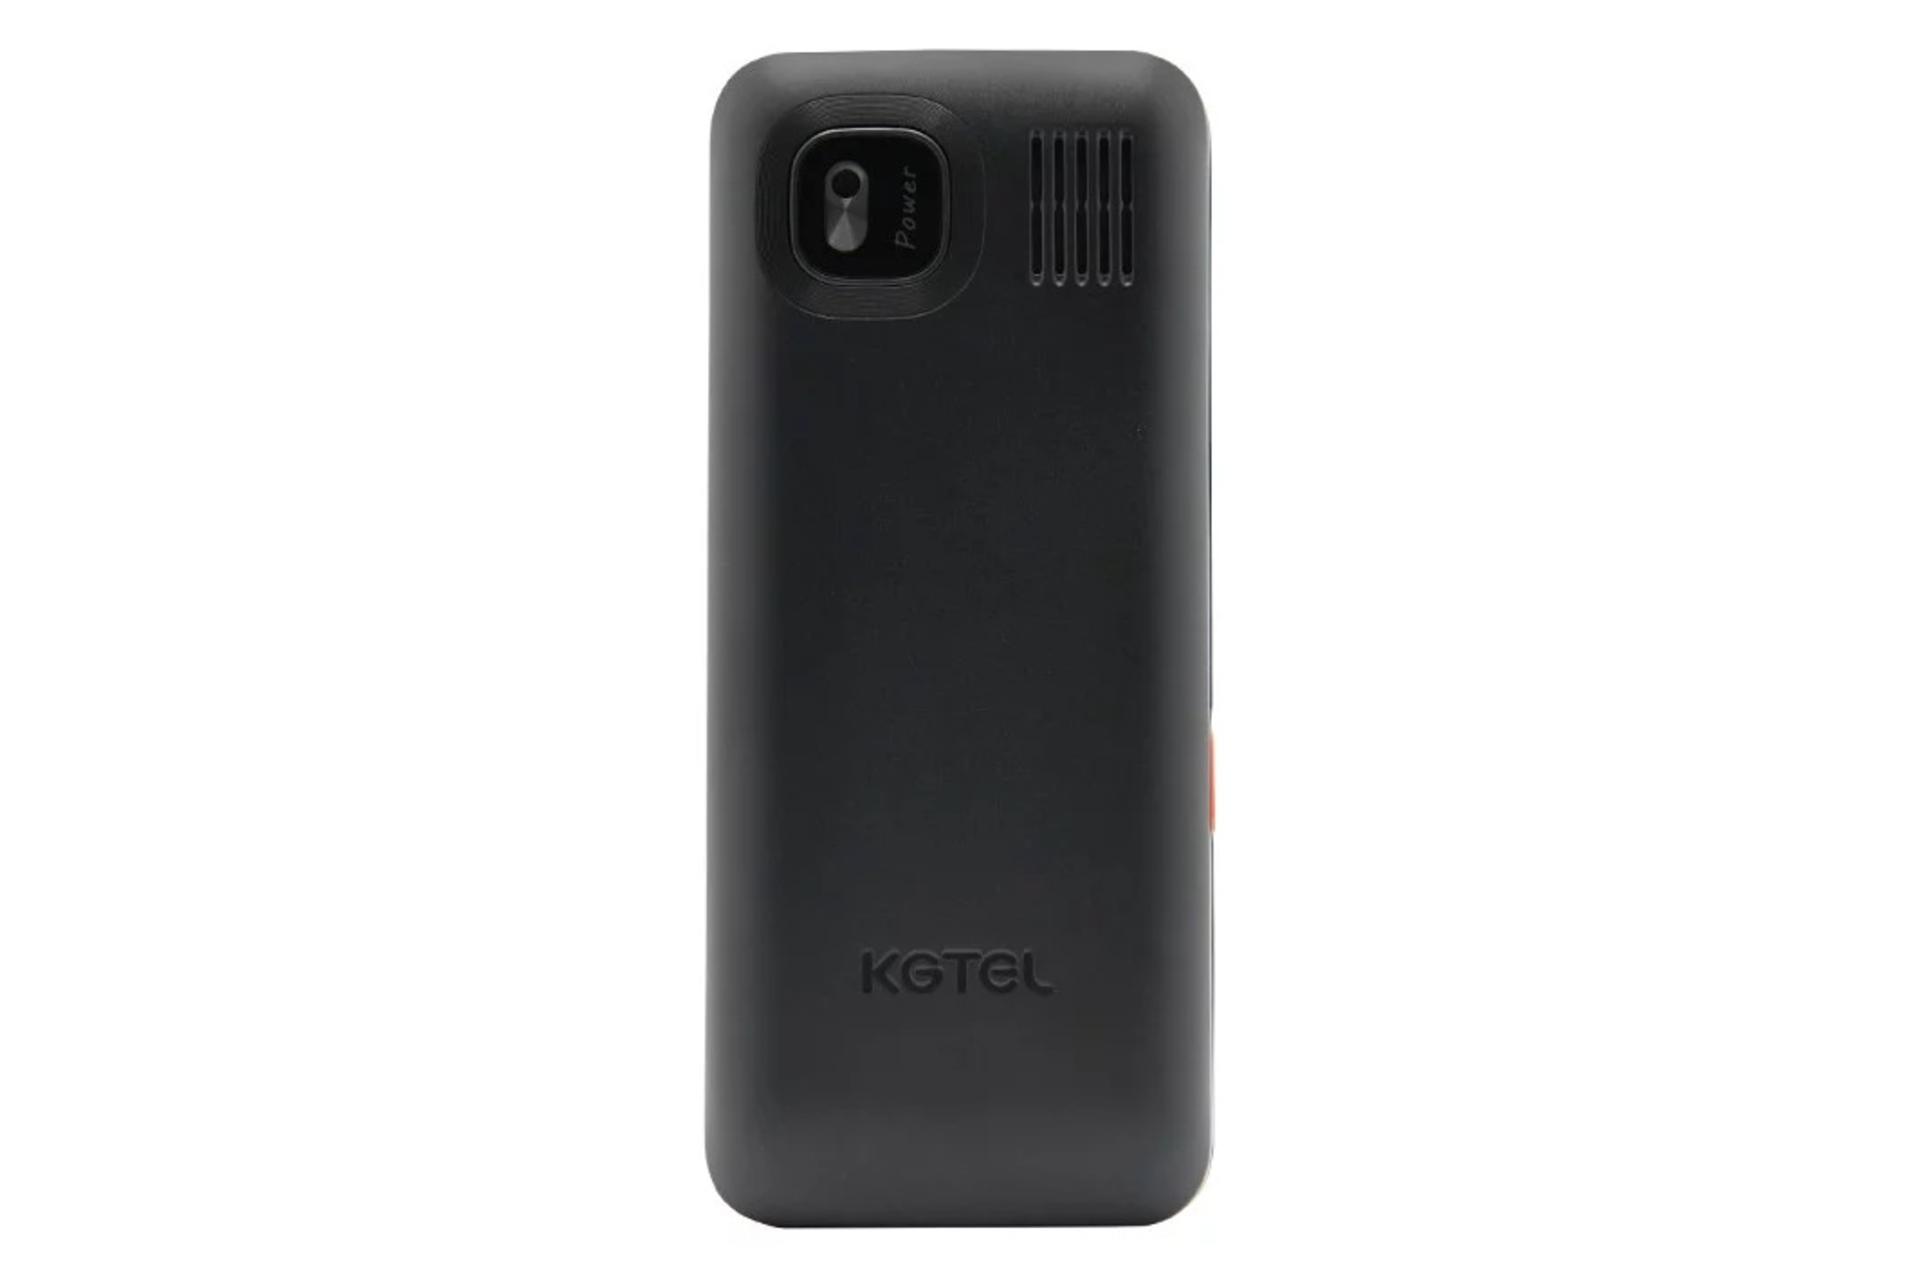 پنل پشت گوشی موبایل کاجیتل KGTEL K-L200